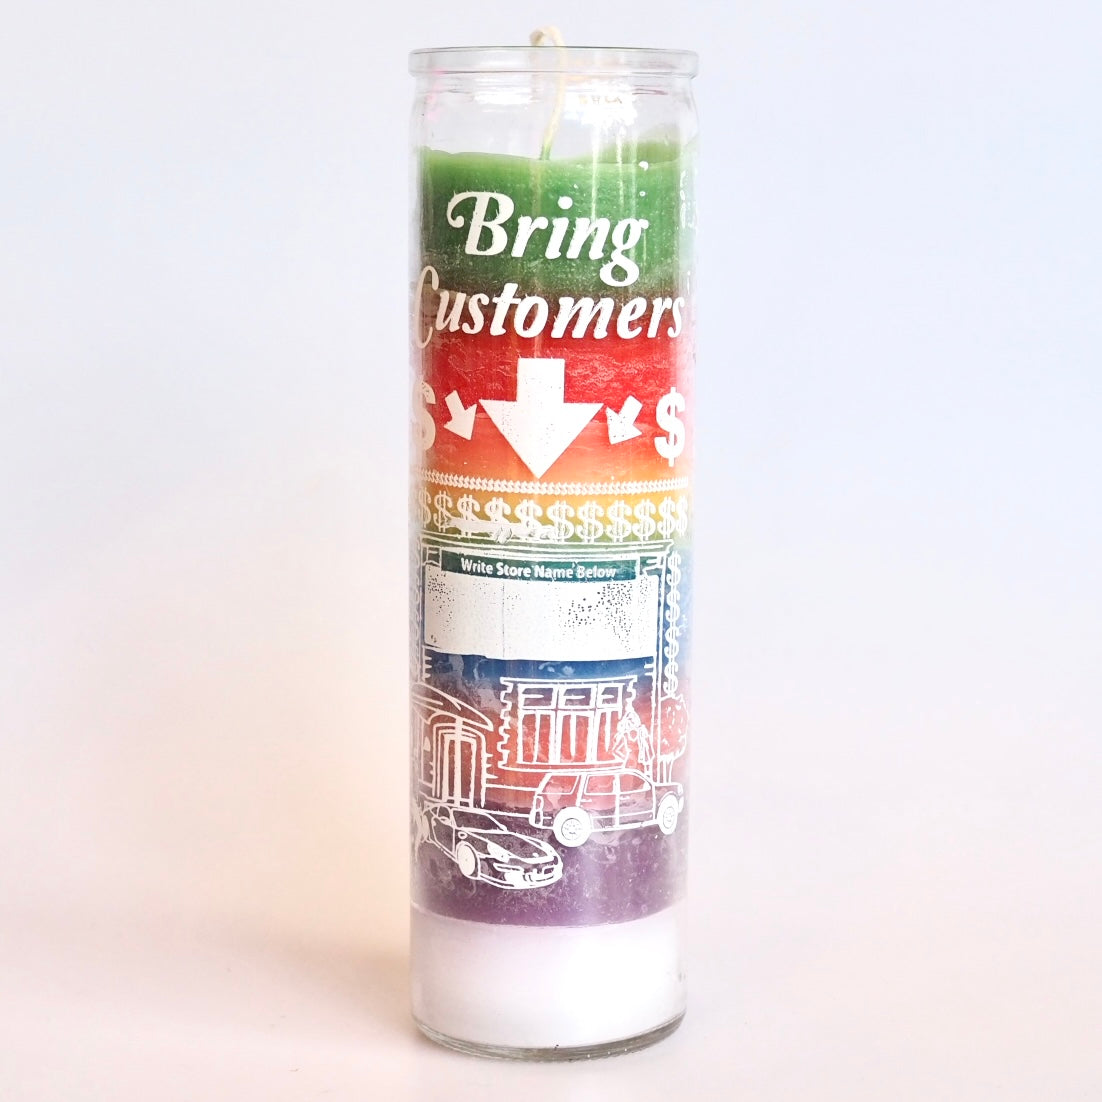 Santa sabina Bring Customers Ritual Prayer Candle